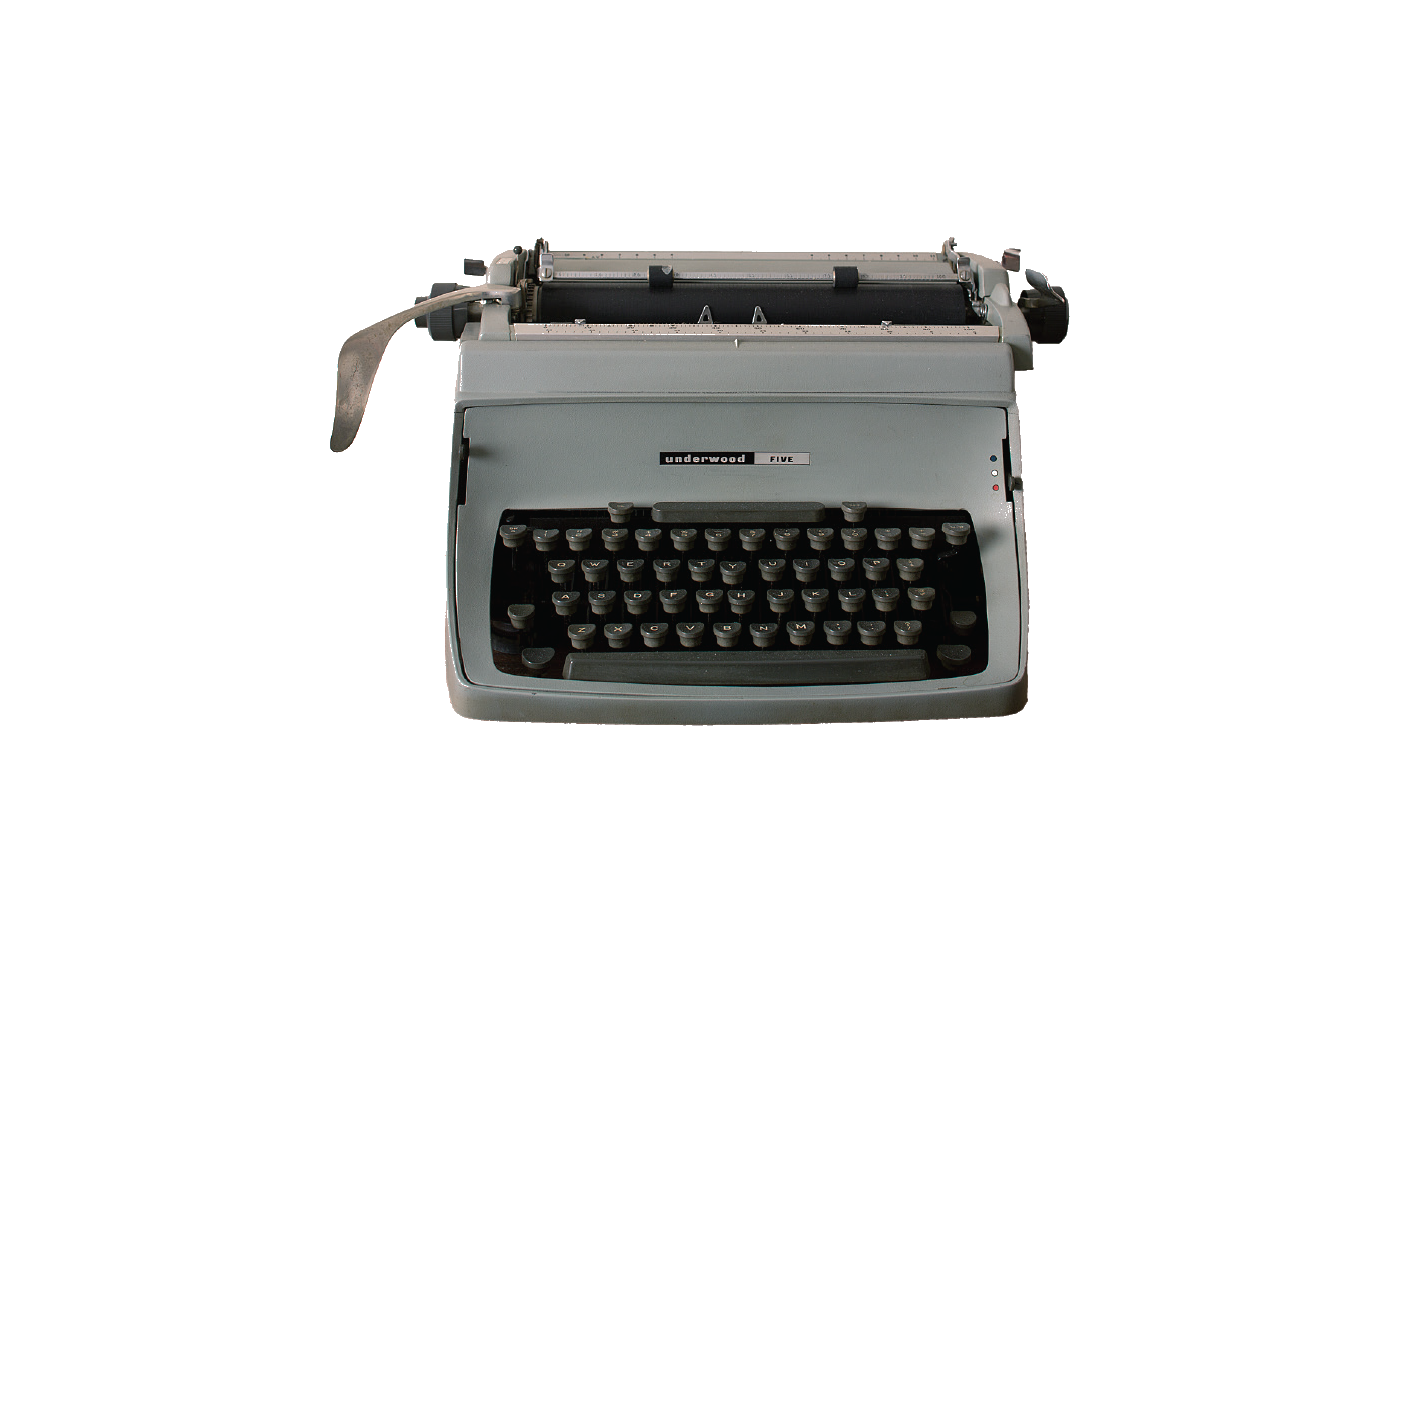 An Underwood Touch-Master 5 typewriter.